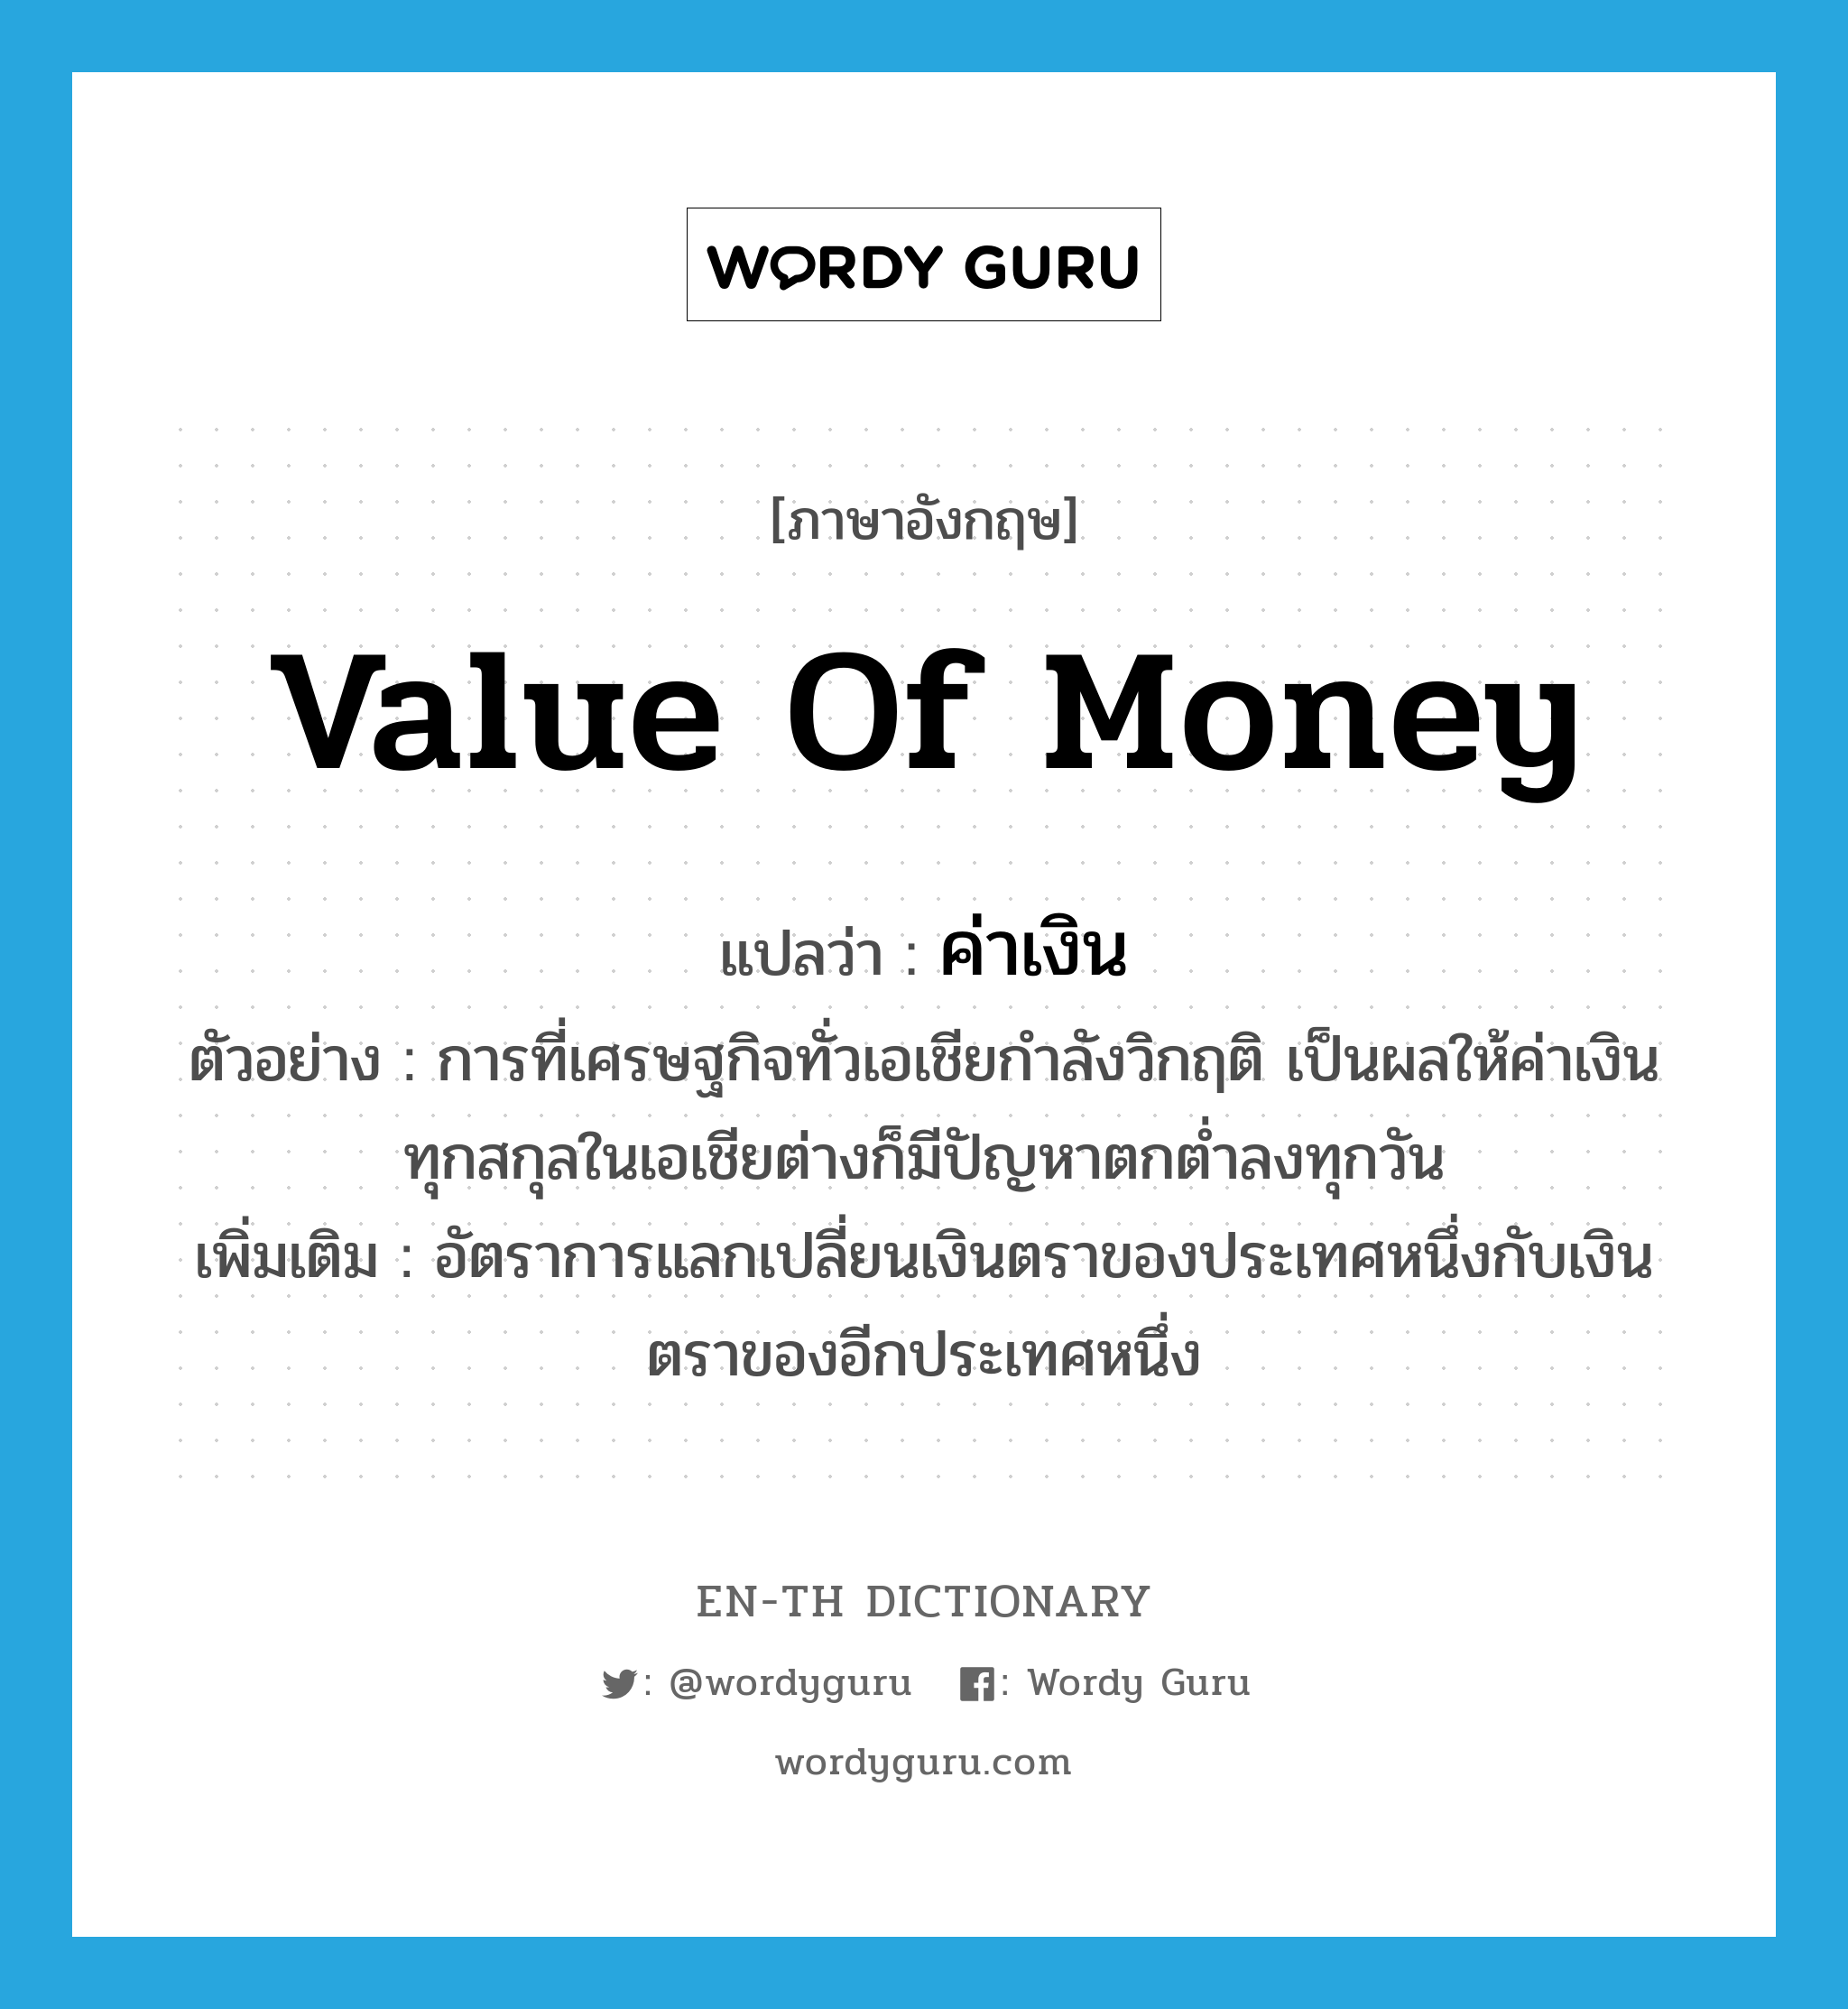 value of money แปลว่า?, คำศัพท์ภาษาอังกฤษ value of money แปลว่า ค่าเงิน ประเภท N ตัวอย่าง การที่เศรษฐกิจทั่วเอเชียกำลังวิกฤติ เป็นผลให้ค่าเงินทุกสกุลในเอเชียต่างก็มีปัญหาตกต่ำลงทุกวัน เพิ่มเติม อัตราการแลกเปลี่ยนเงินตราของประเทศหนึ่งกับเงินตราของอีกประเทศหนึ่ง หมวด N